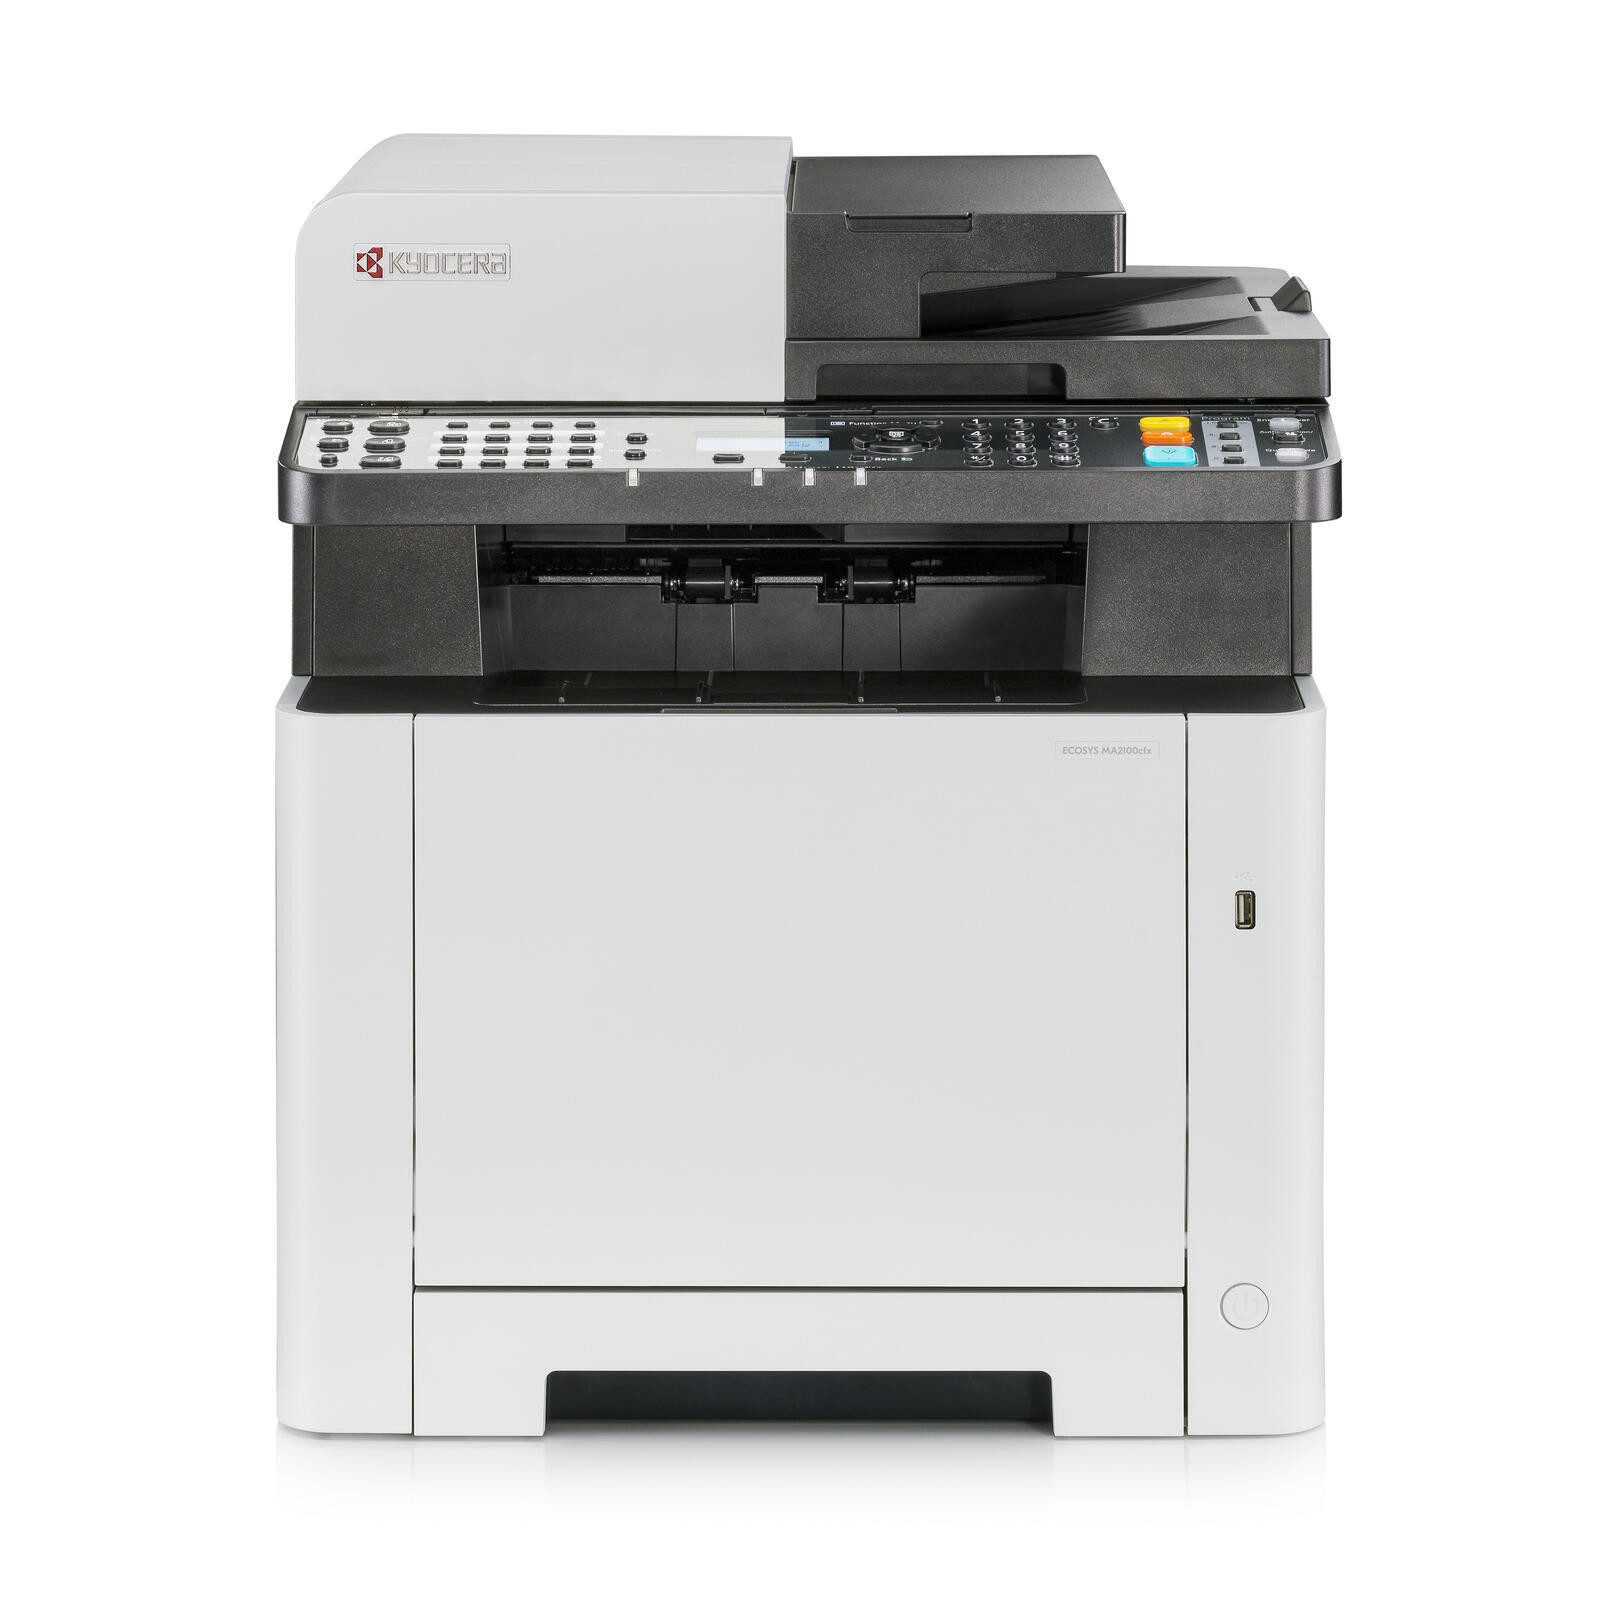 KYOCERA Kyocera ECOSYS MA2100cfx Многофункциональный принтер, (ADF (Automatischer Dokumenteneinzug), Automatischer Duplexdruck)